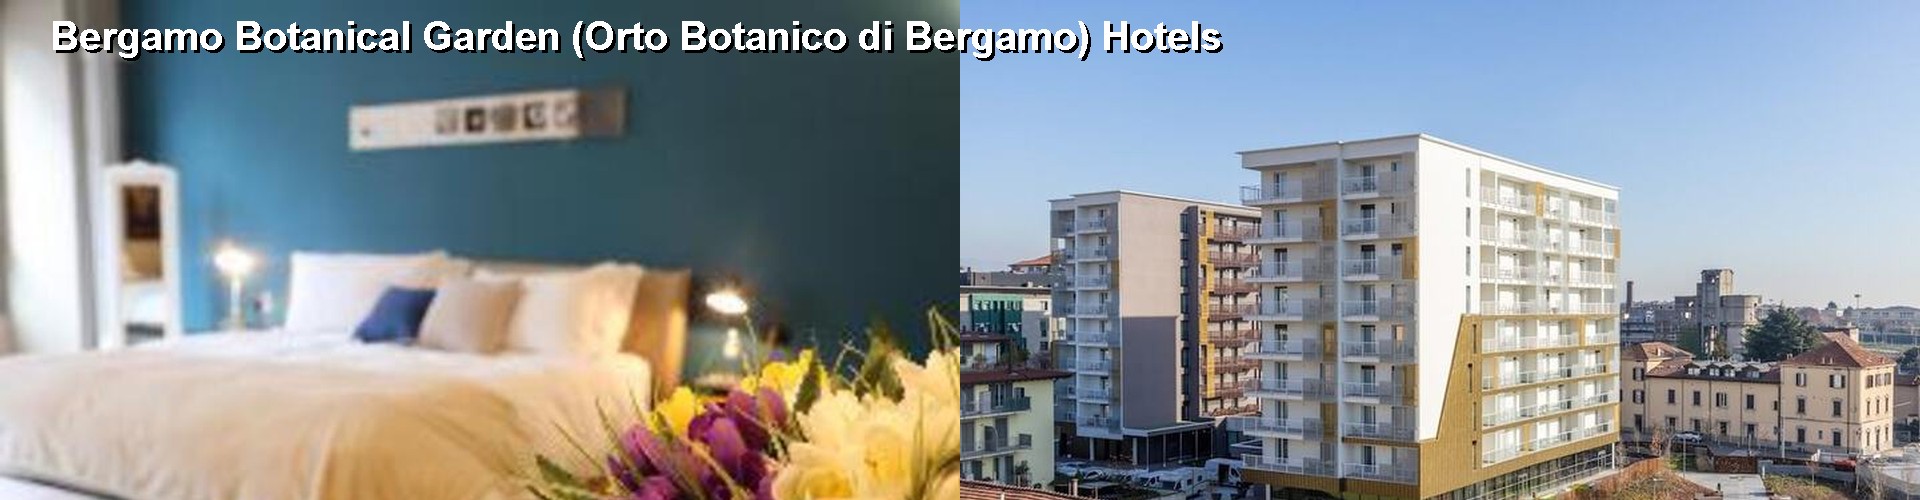 5 Best Hotels near Bergamo Botanical Garden (Orto Botanico di Bergamo)